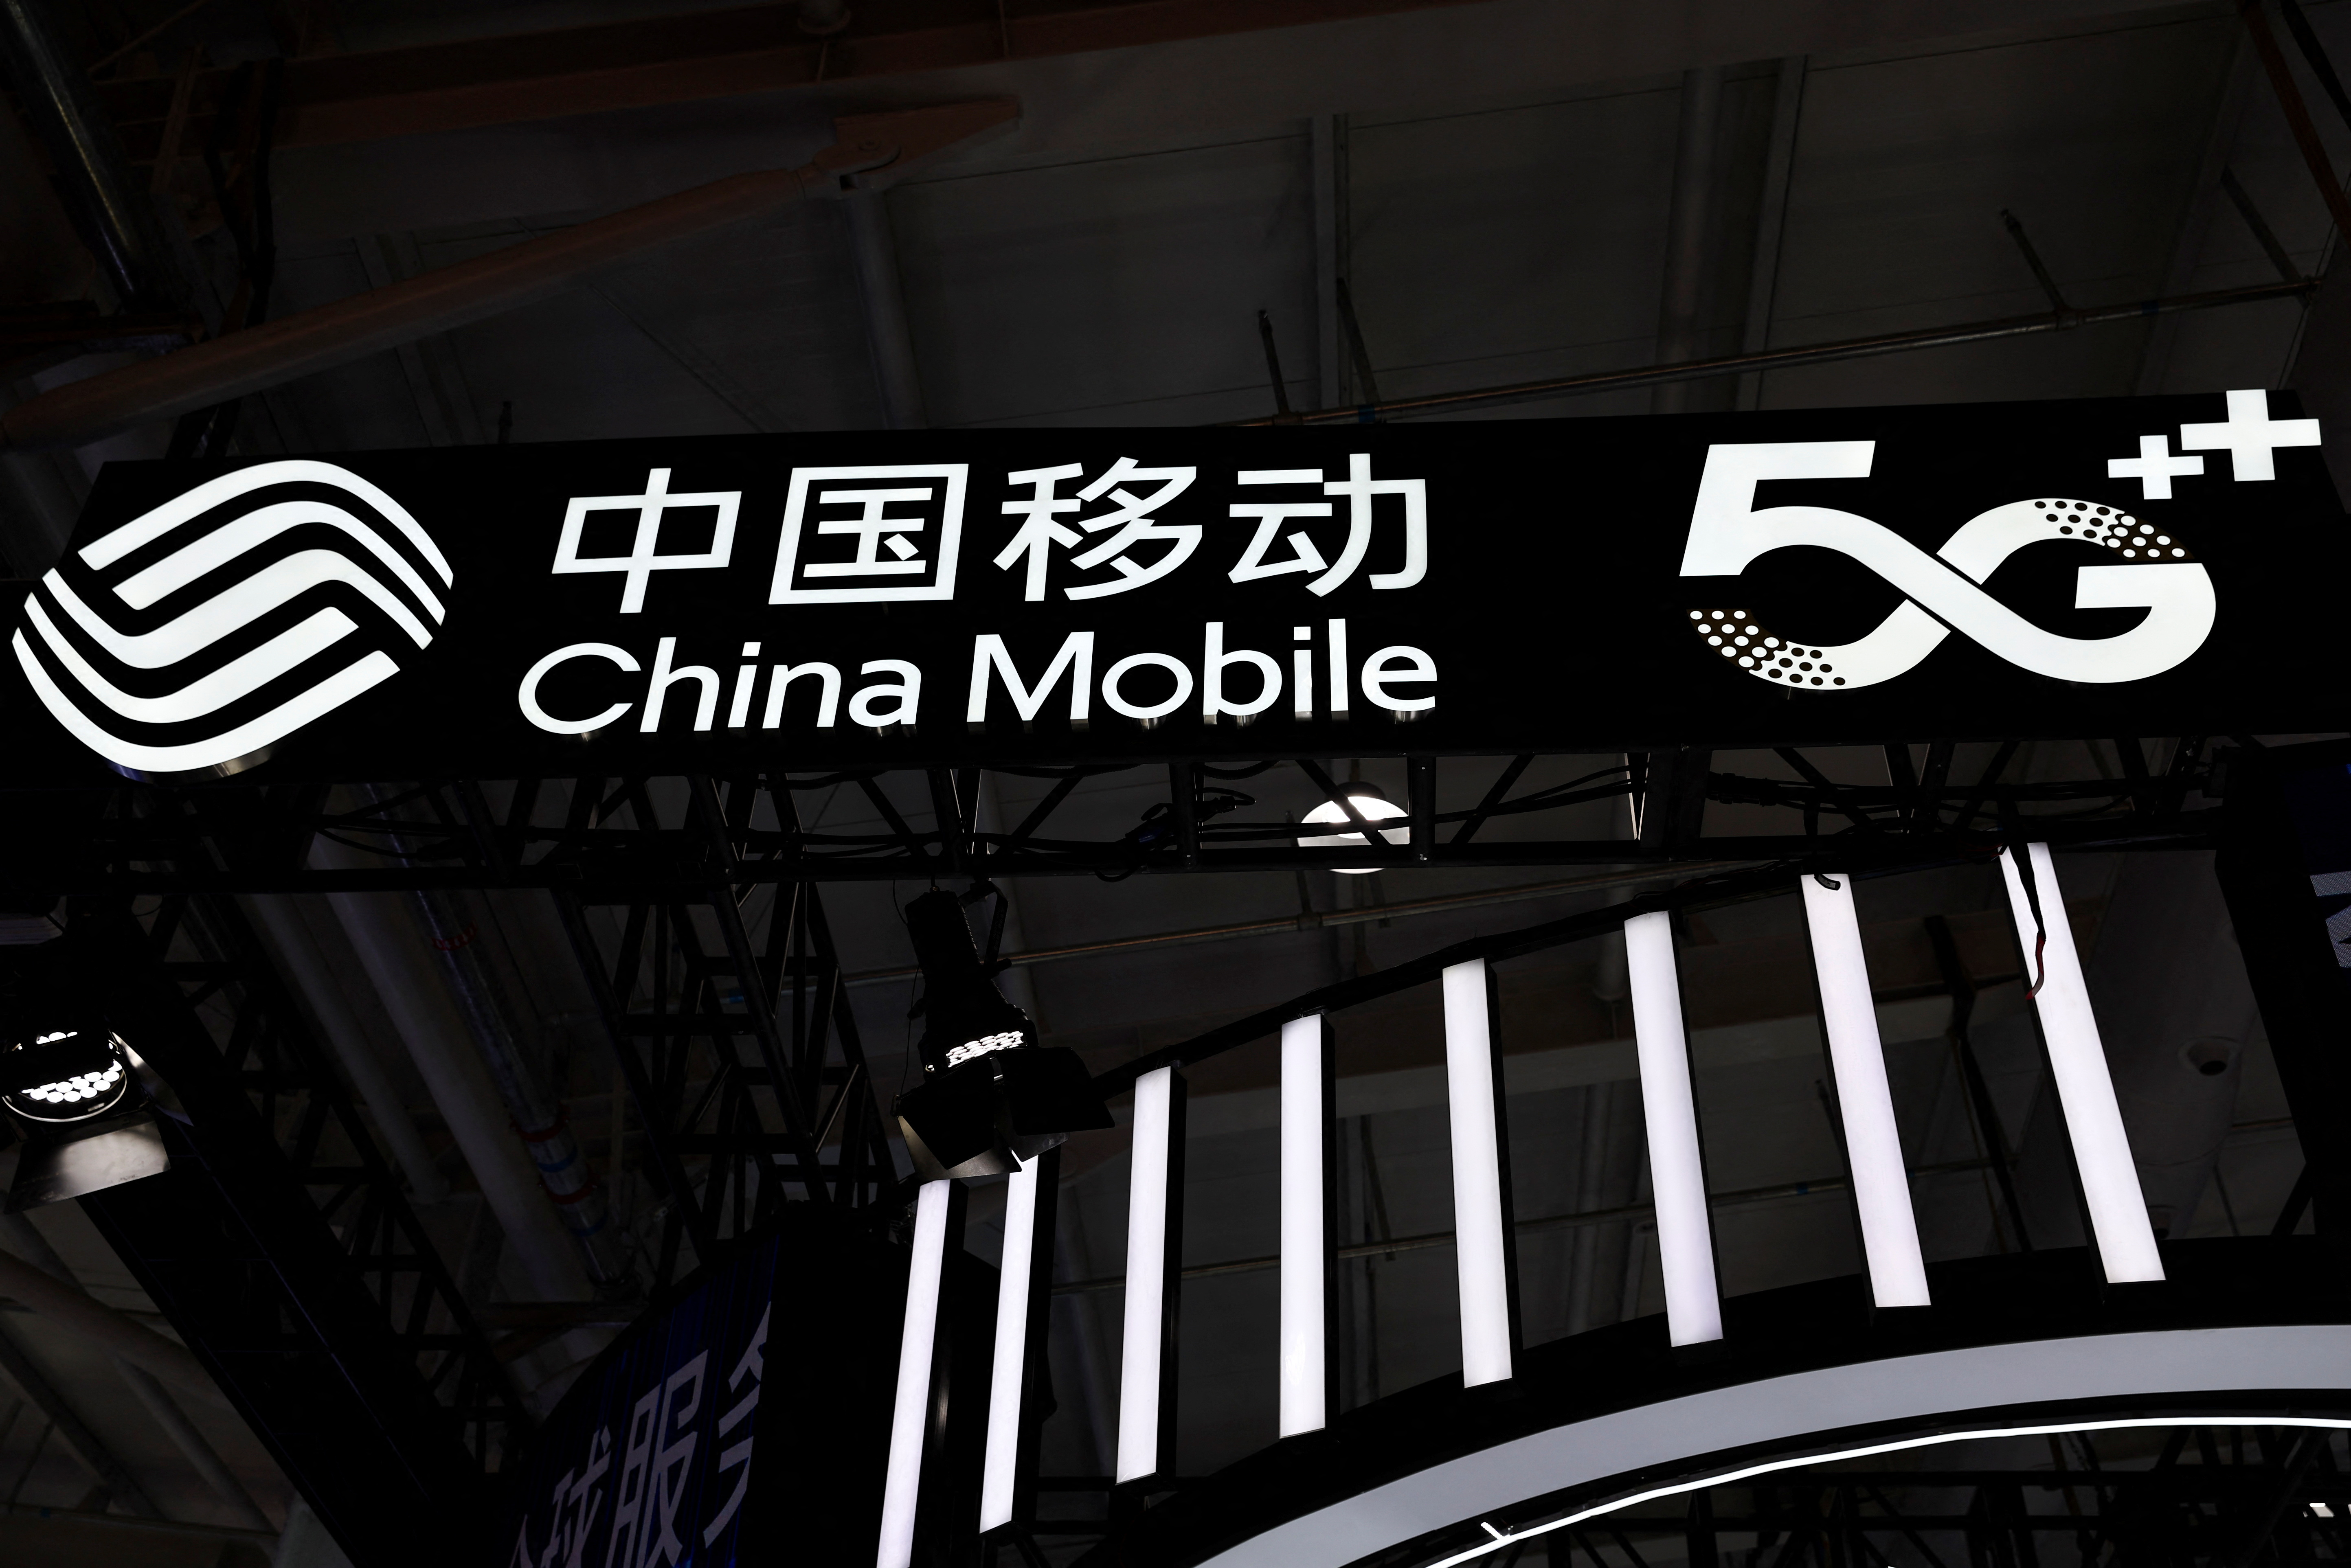 La cobertura 5G en China es del 86% y sus proyecciones de crecimiento son muy altas (REUTERS)